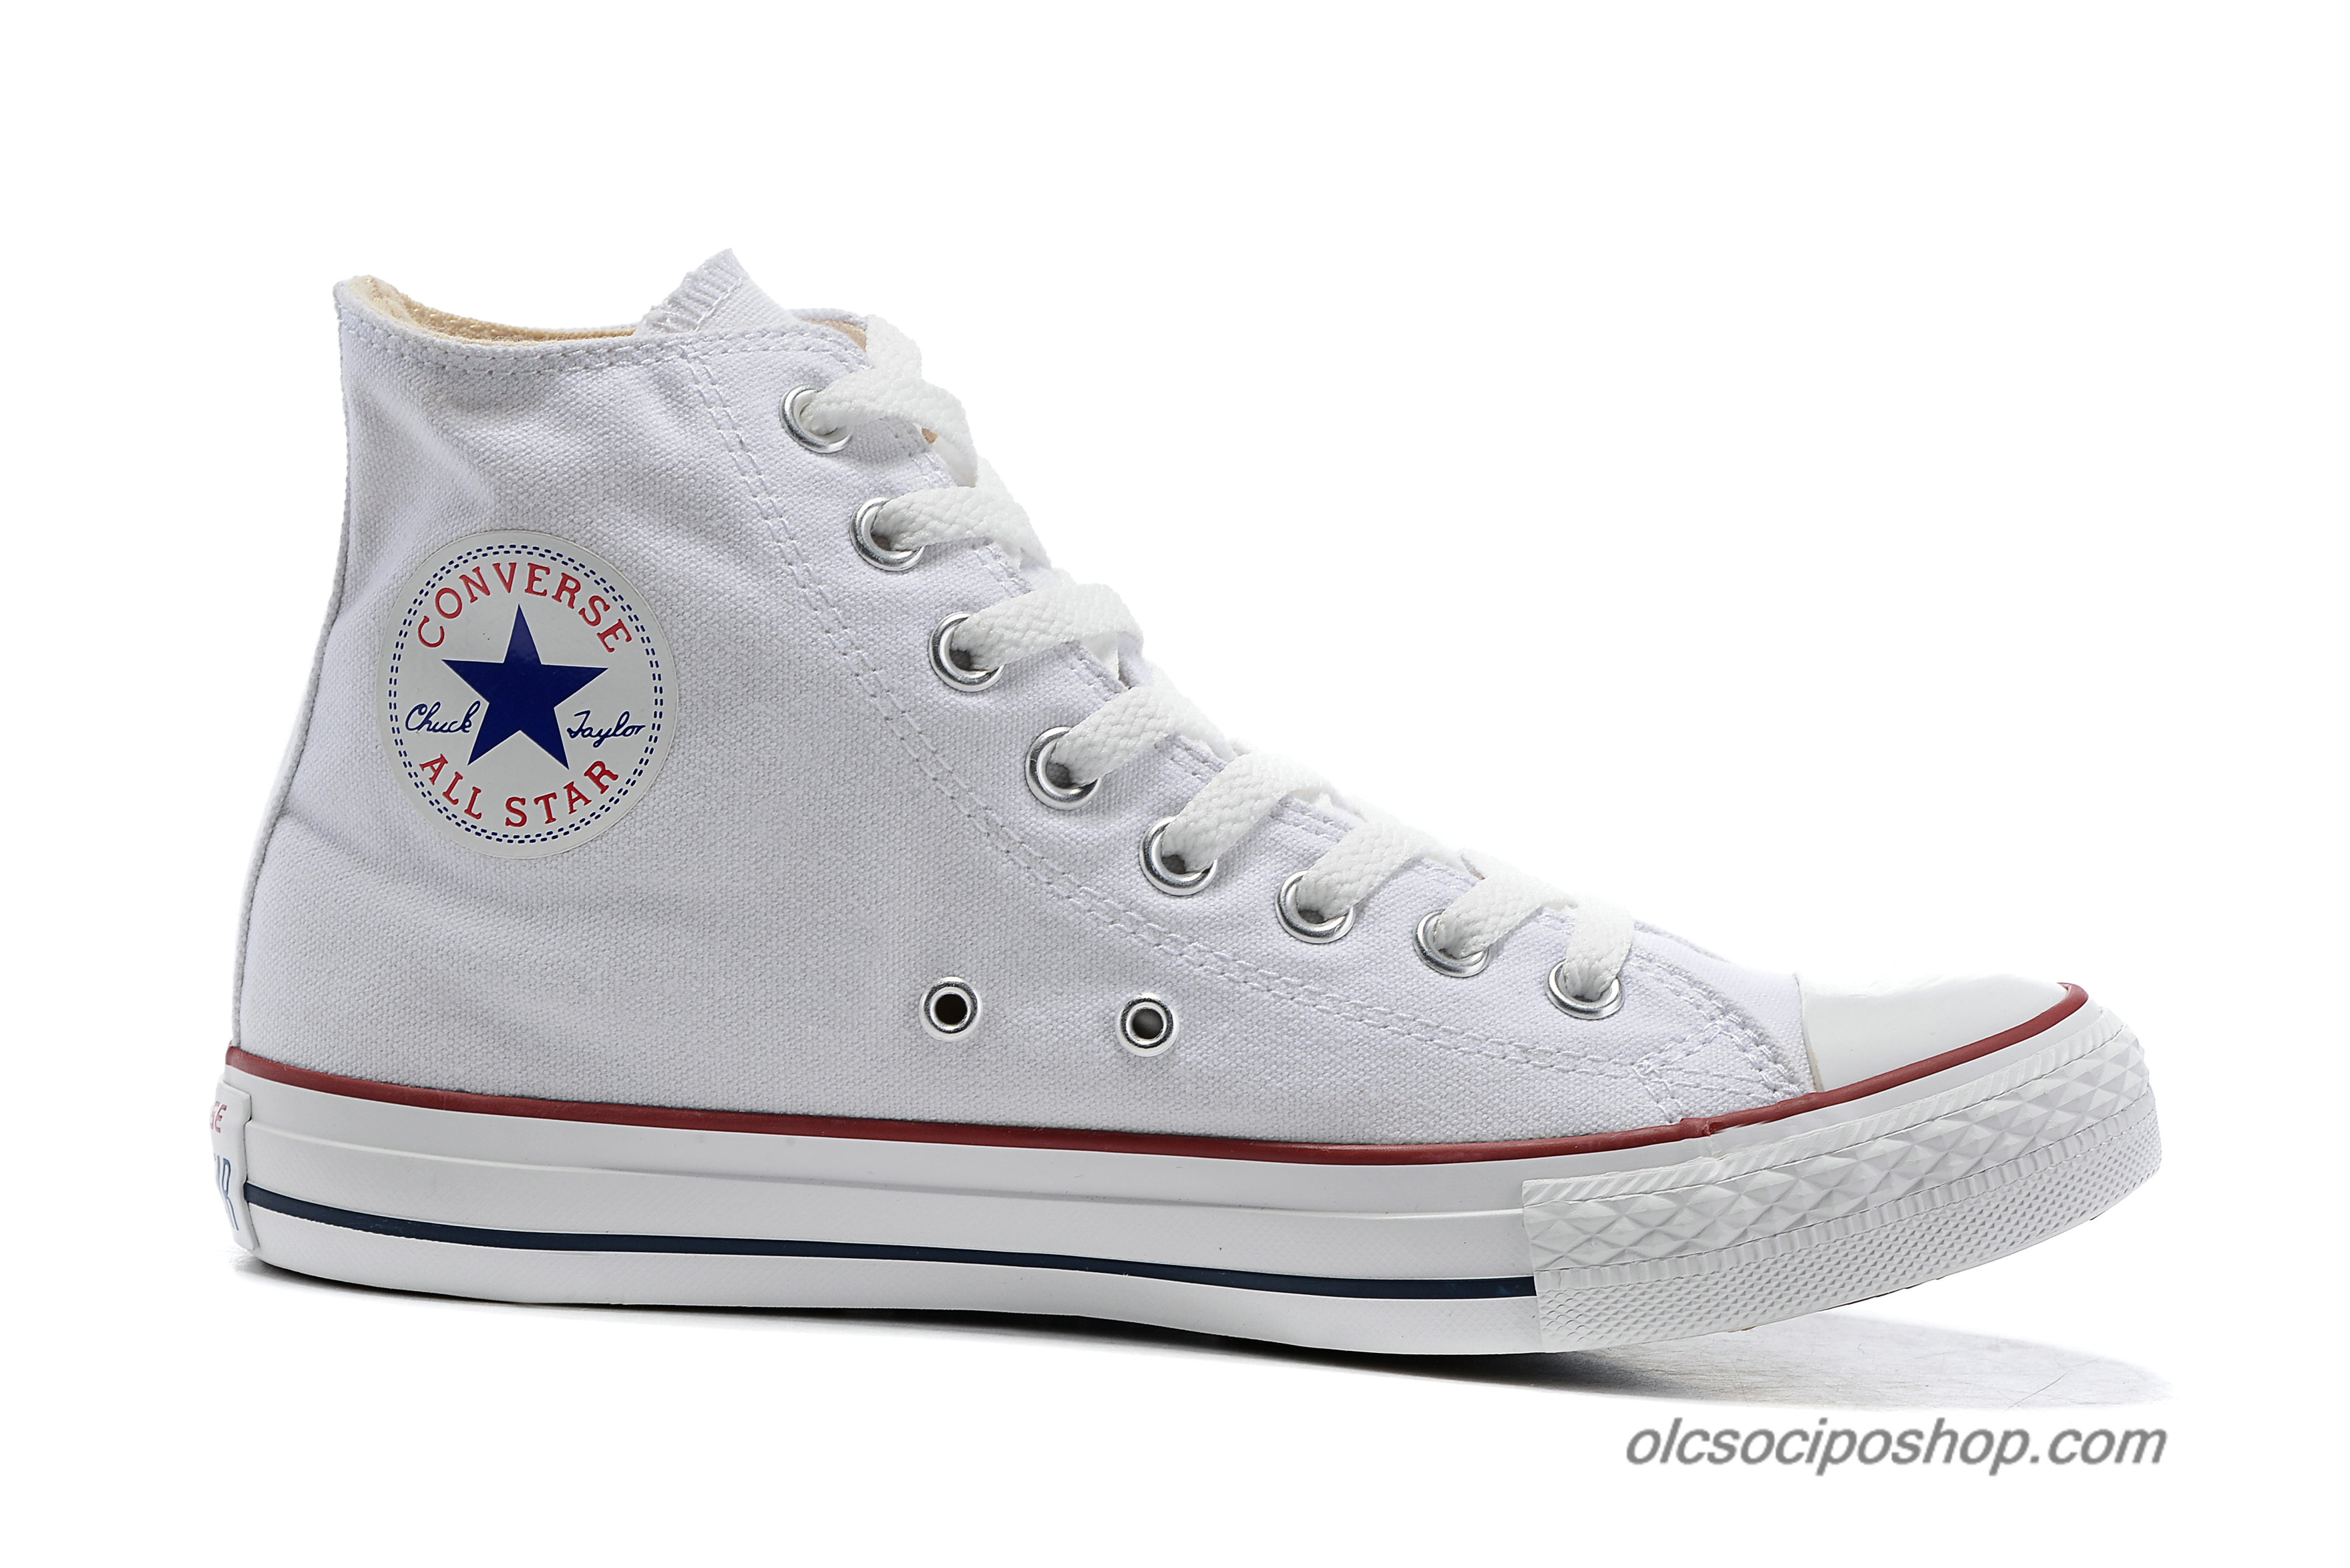 Converse Chuck Taylor All Star HI Classic Fehér Cipők (101009C) - Kattintásra bezárul